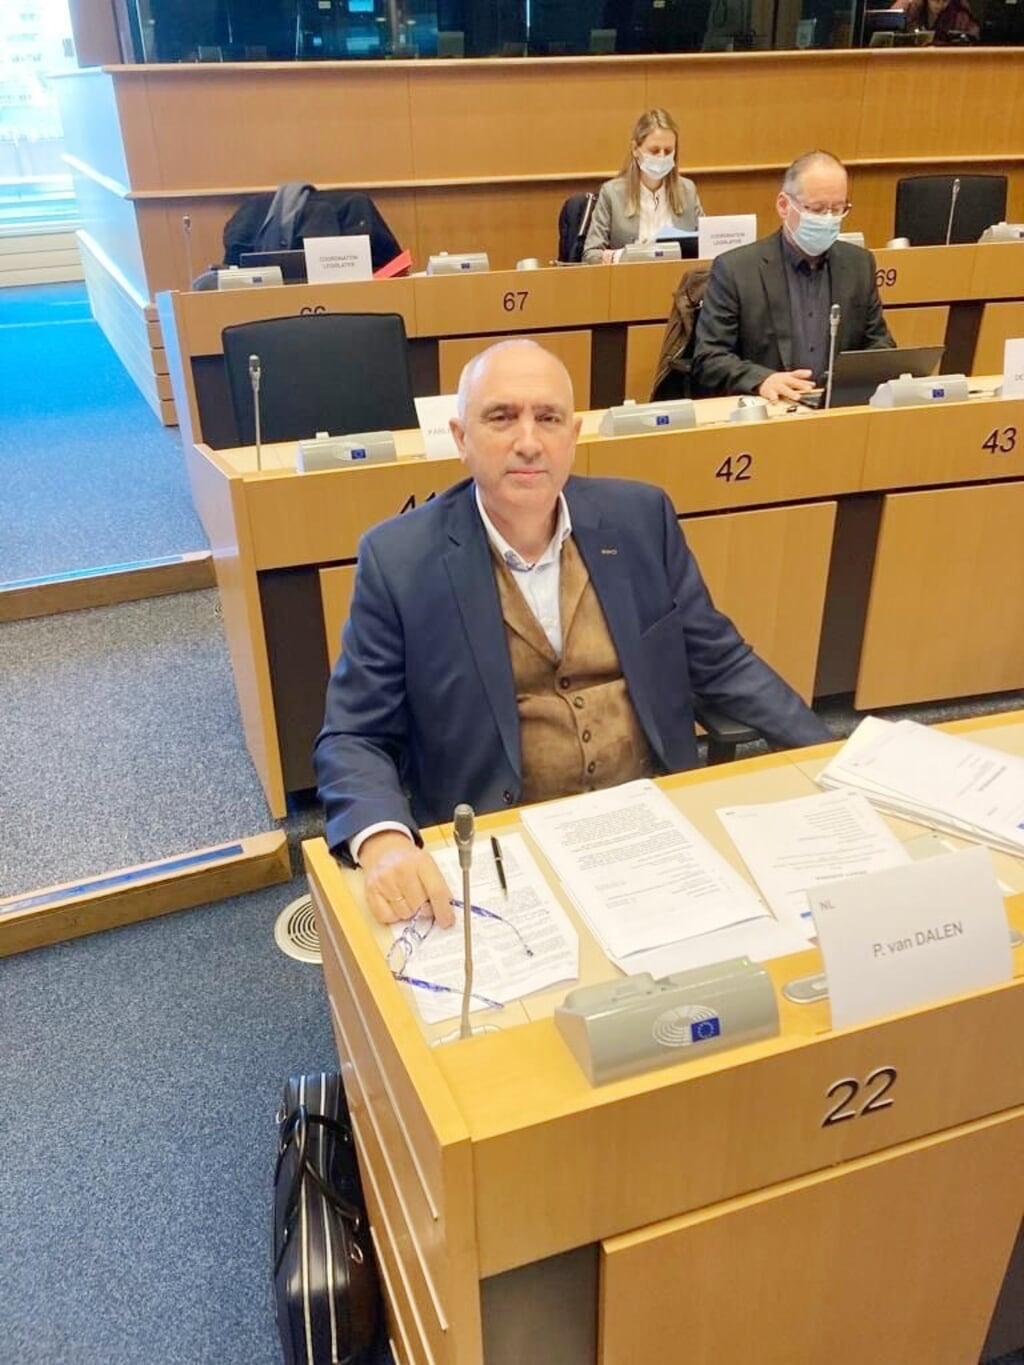 H Europarlementariër Peter van Dalen herkozen.